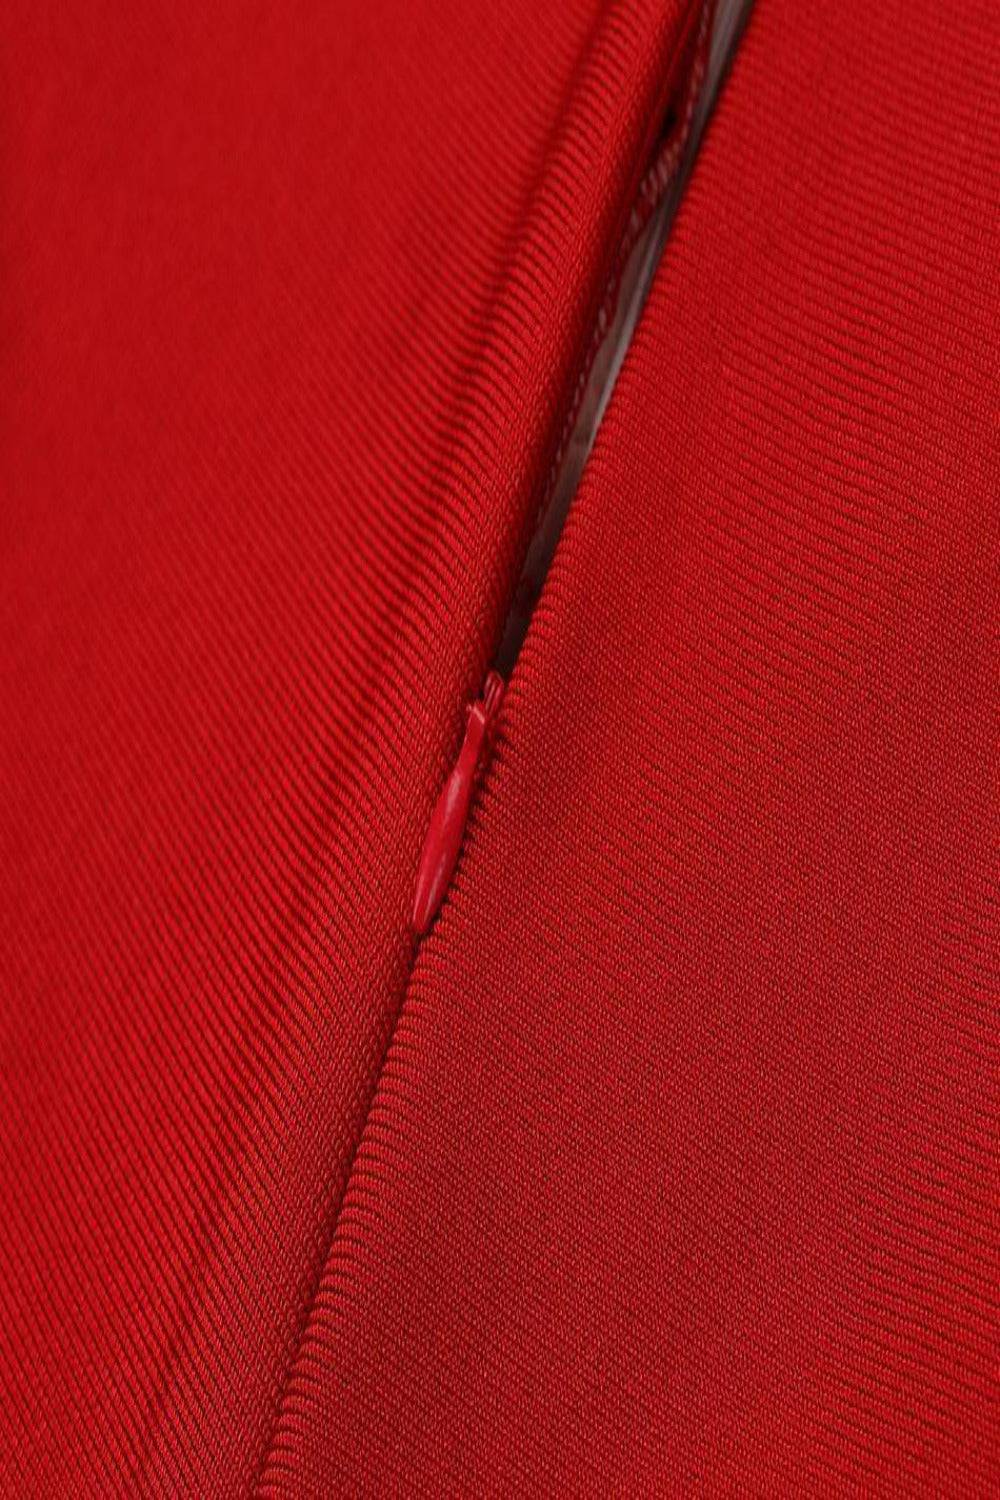 Feather Long Sleeve 2 Piece Red Jumpsuit Set - TGC Boutique - 2 Piece Set